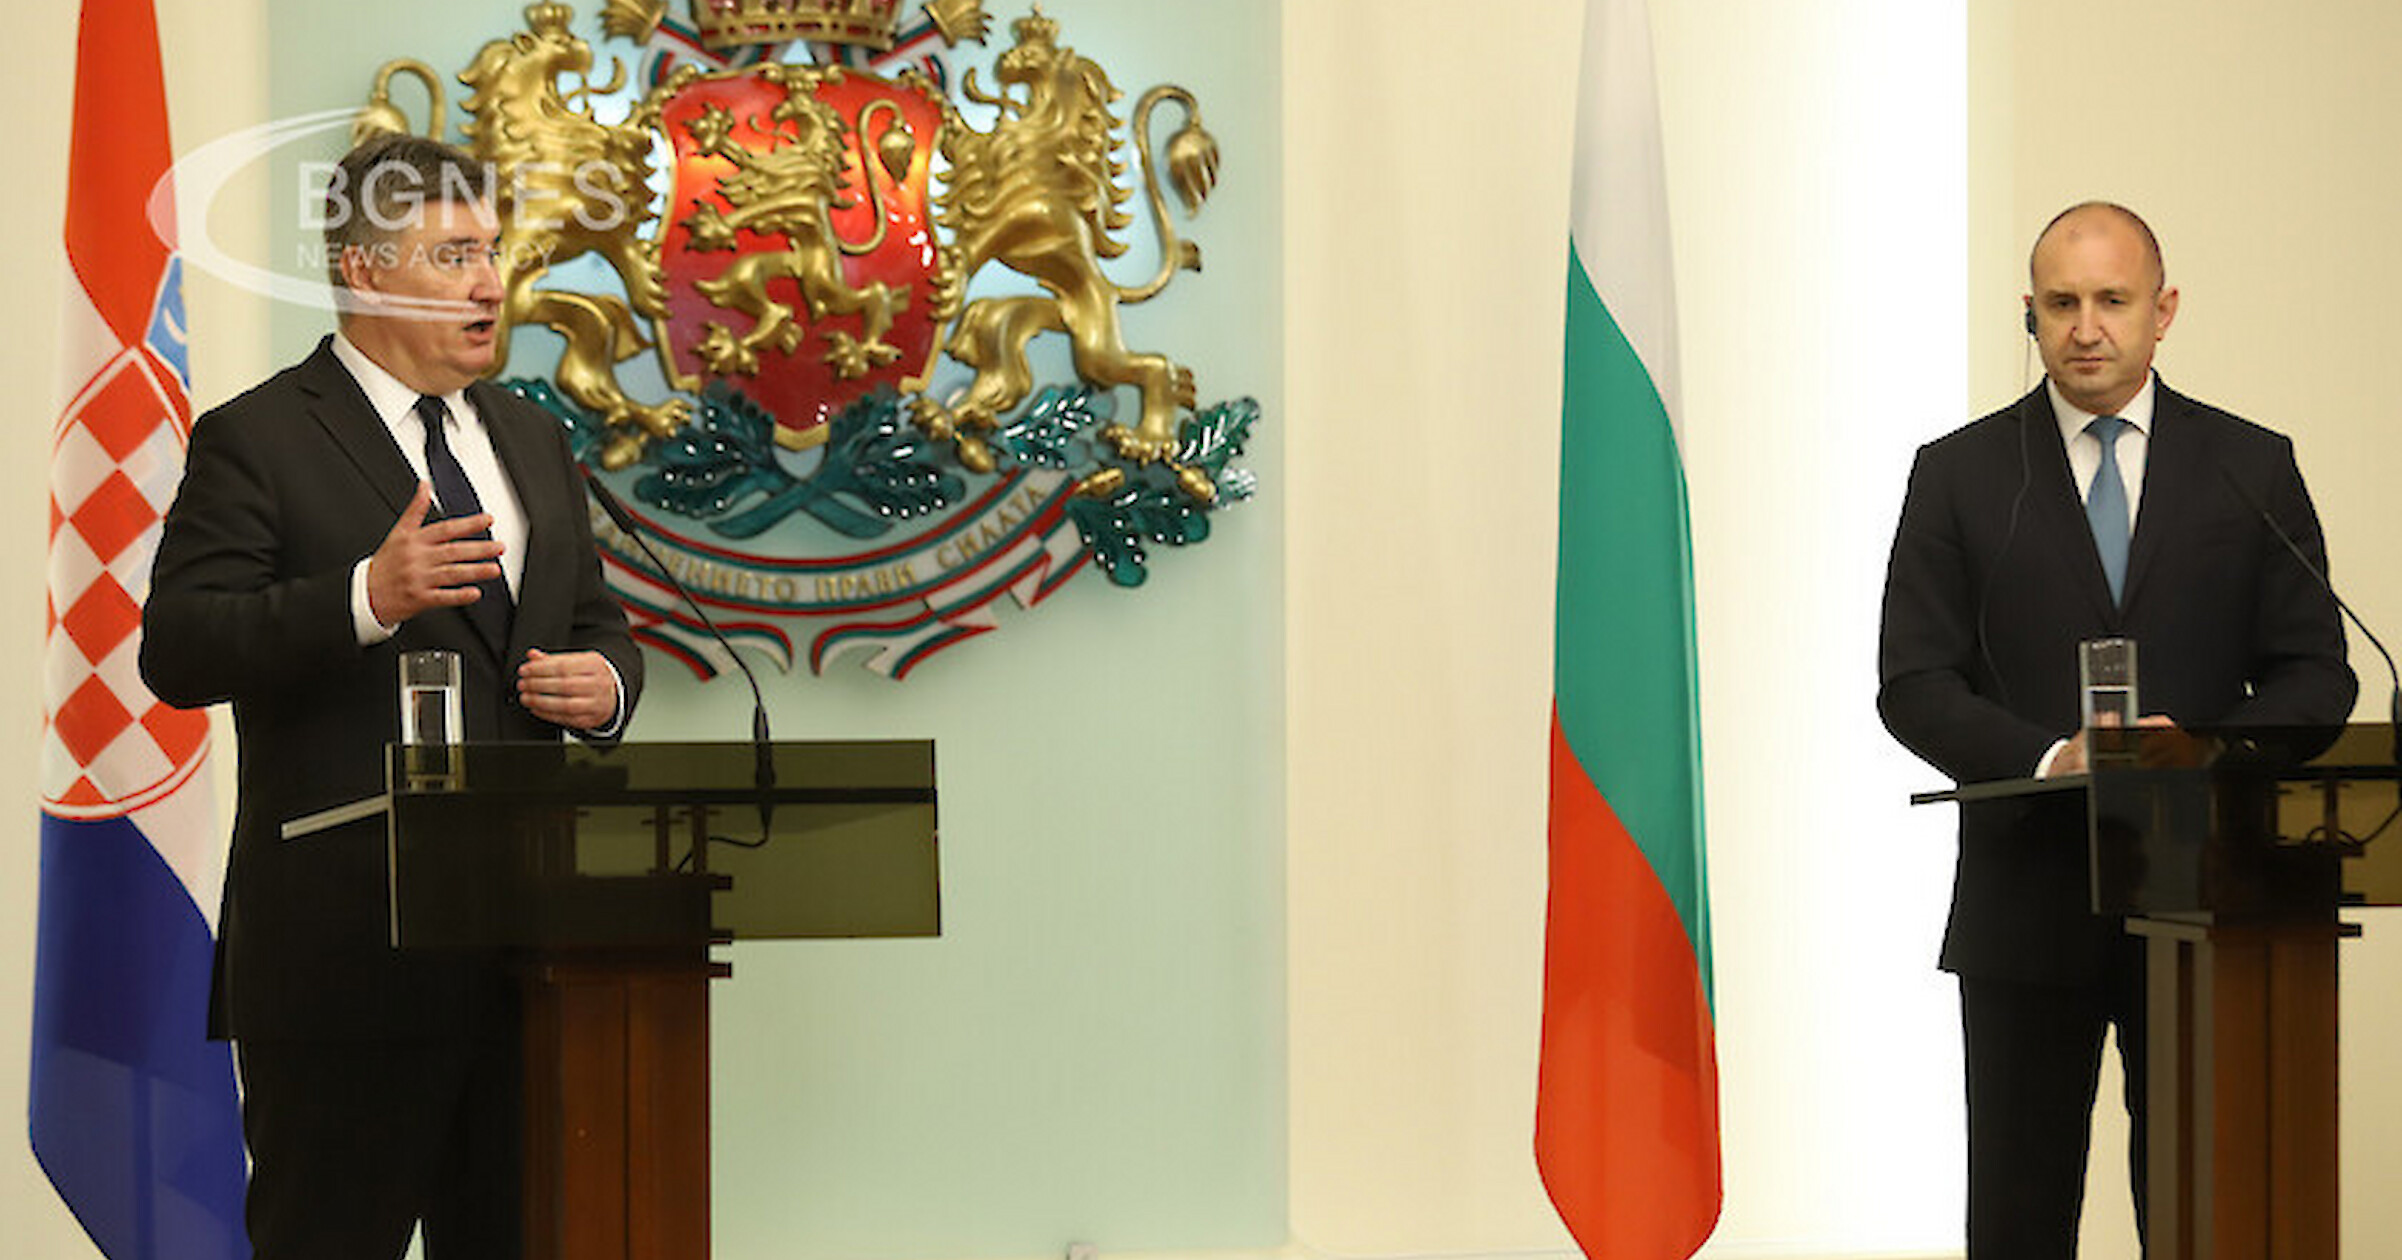 България и Хърватия са свързани с традиционно приятелство и тясно